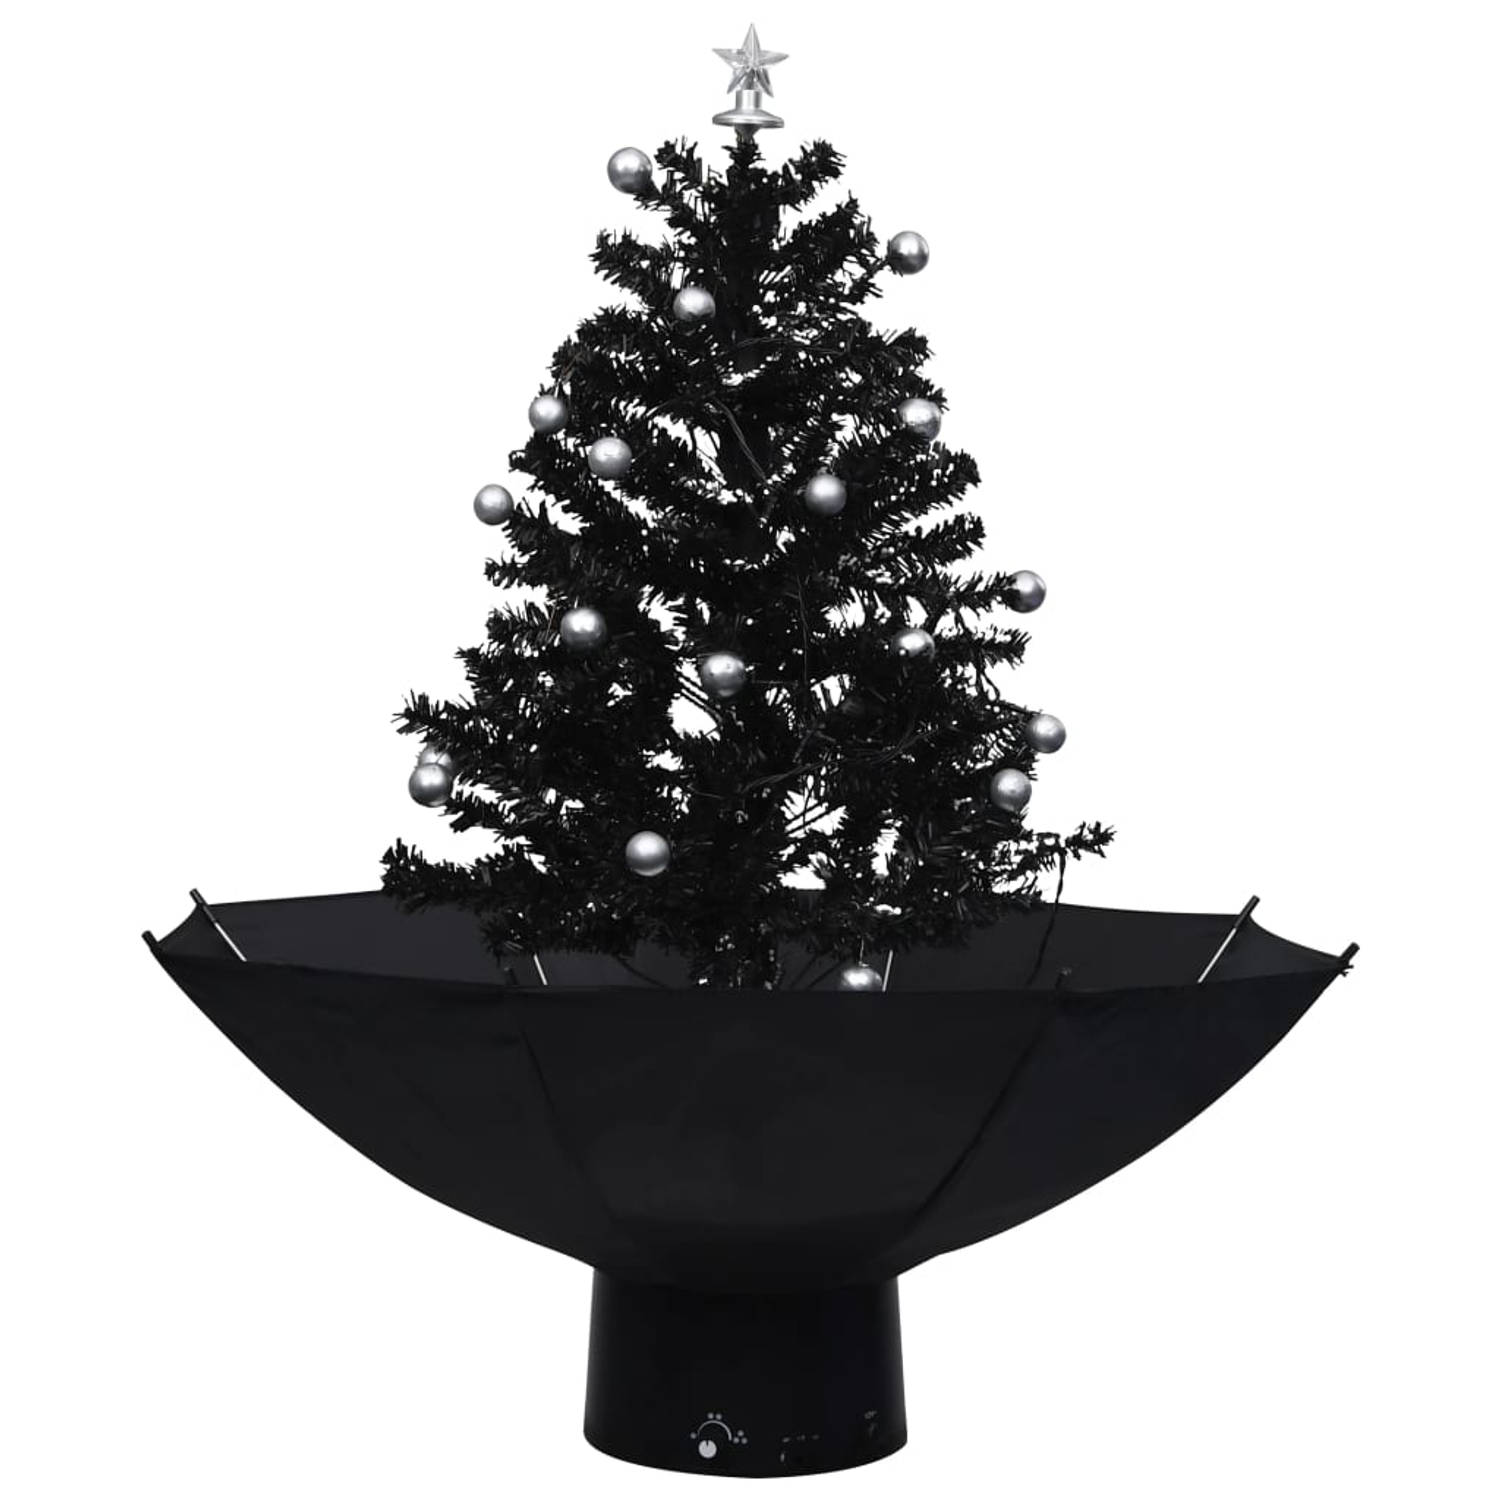 The Living Store Kerstboom sneeuwend met paraplubasis 75 cm PVC zwart - Decoratieve kerstboom